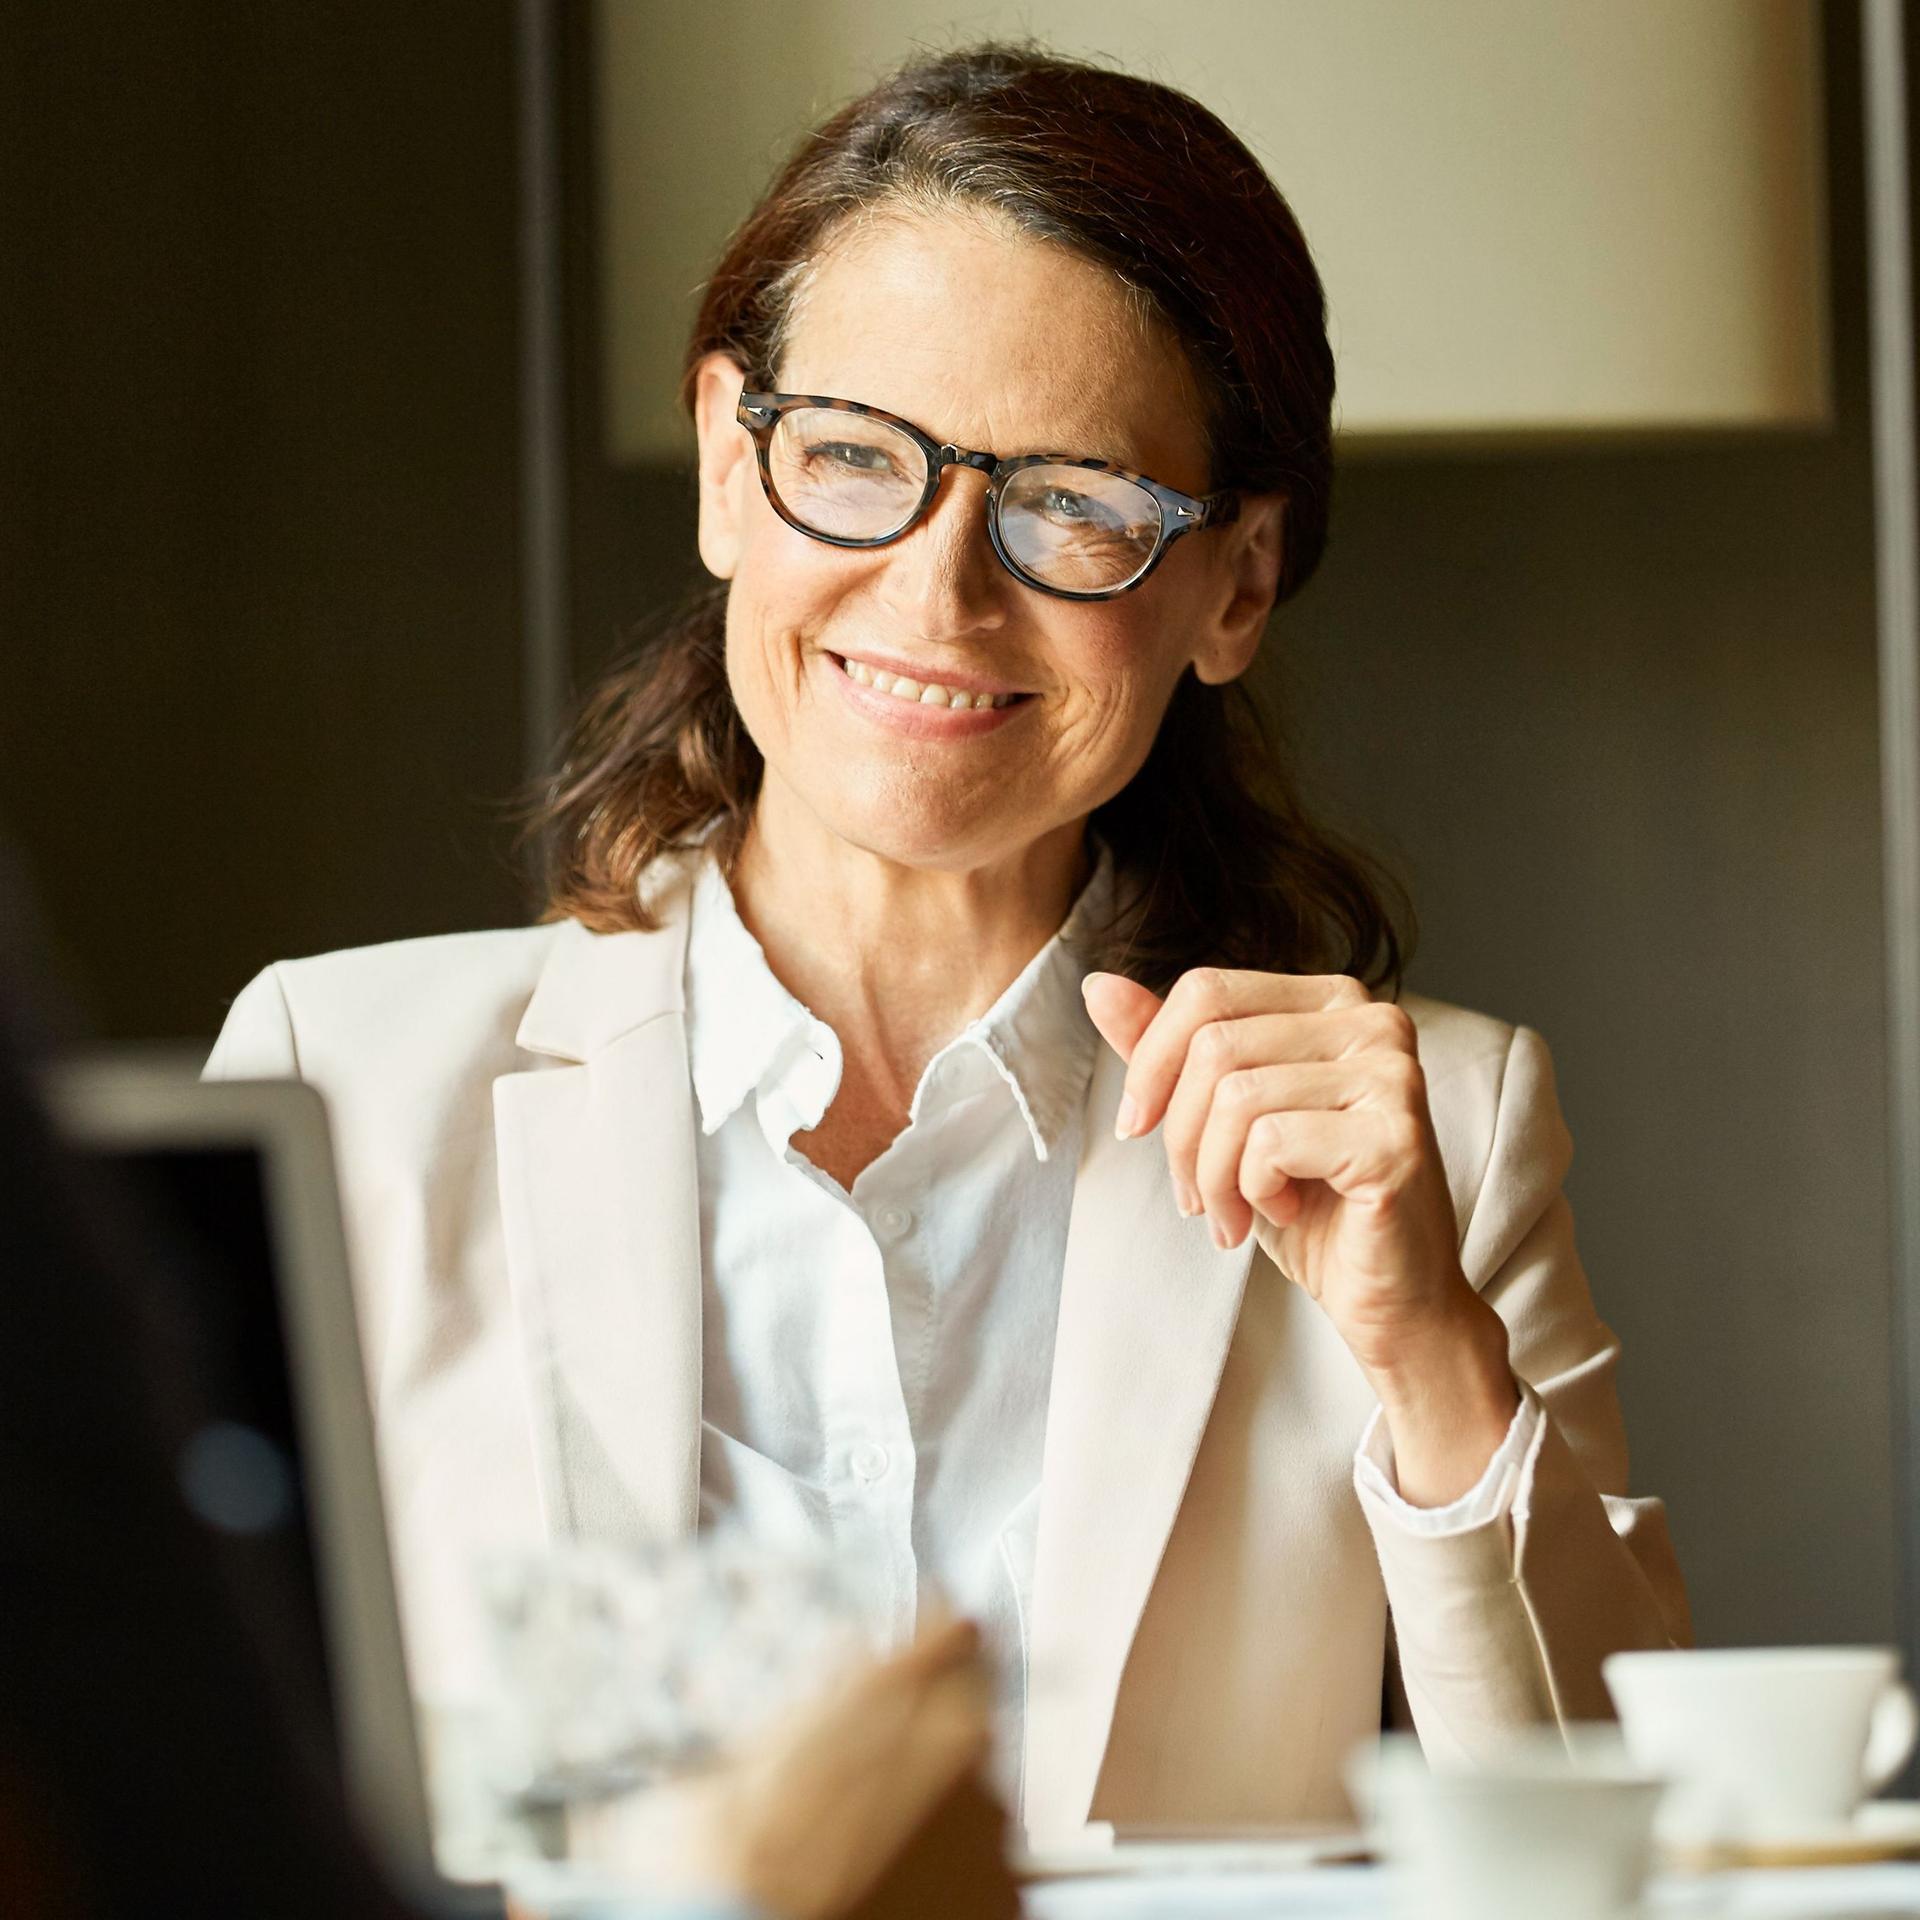 Frau in Business-Kleidung blickt lächelnd während einer Besprechung an einem Tisch zu ihrem Gegenüber. 